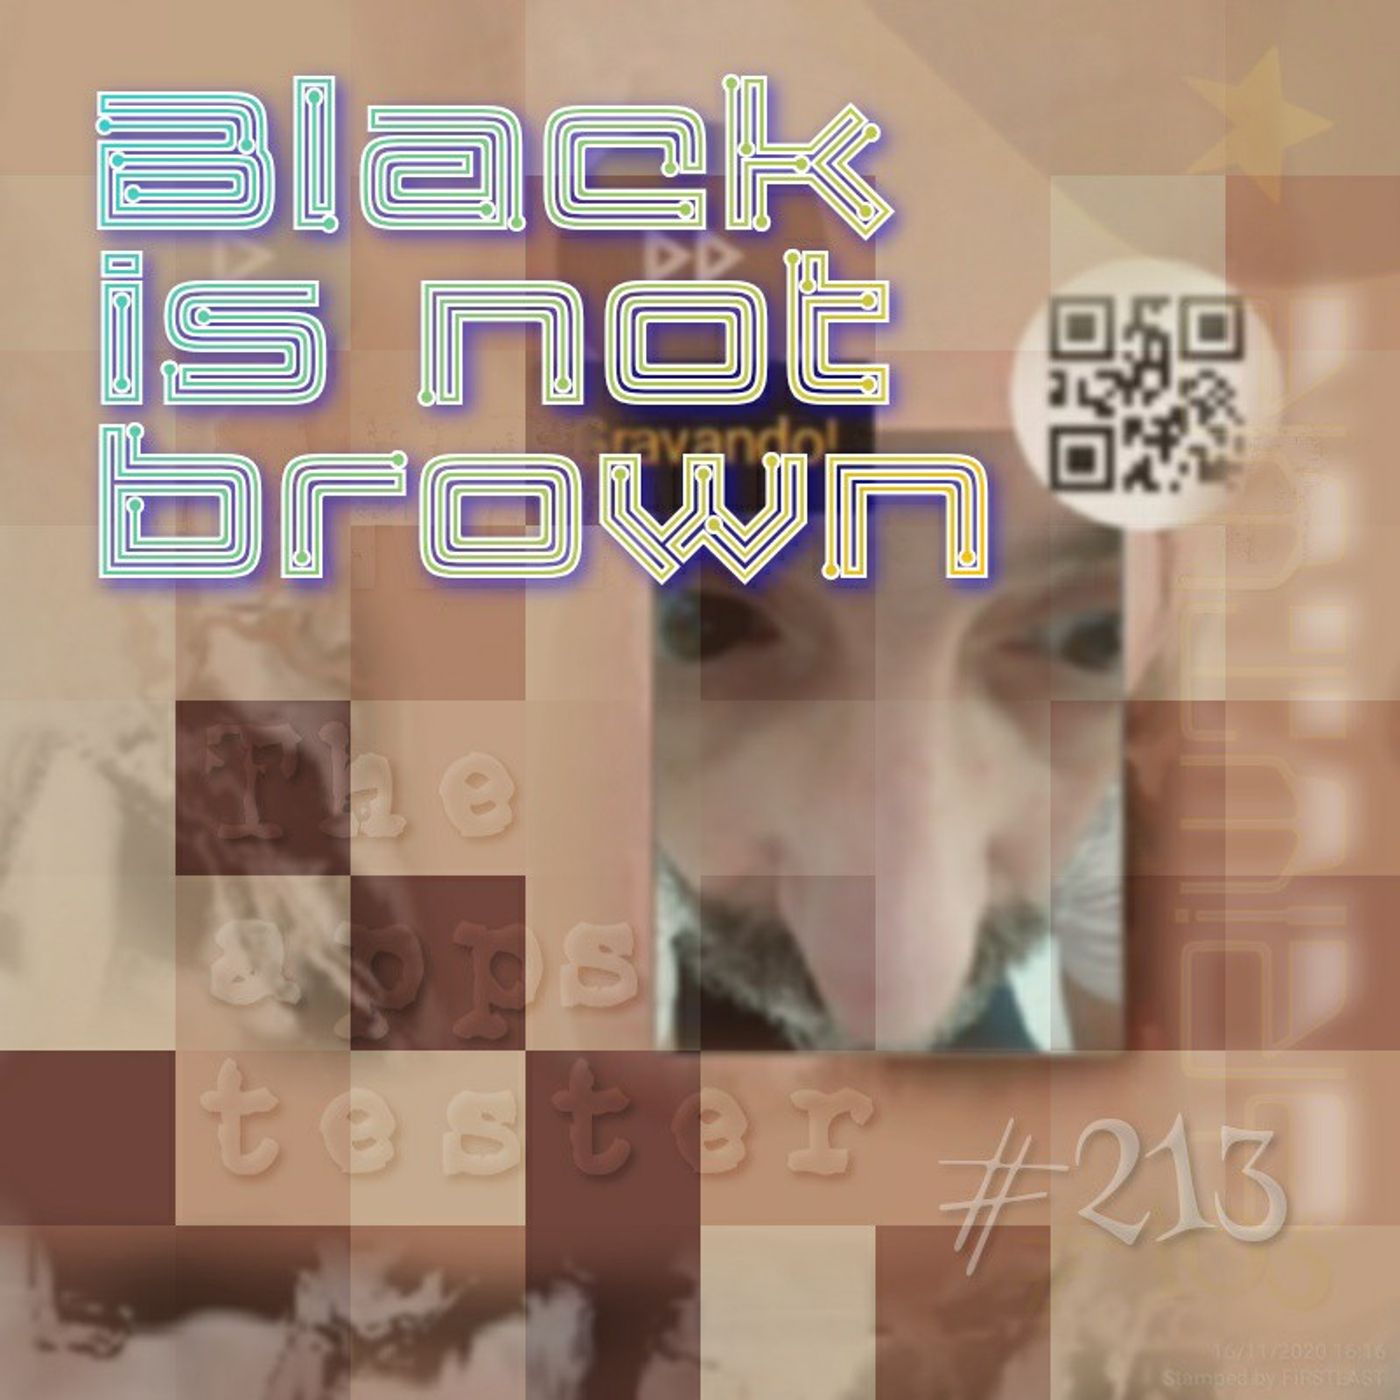 Black is not brown (#213)